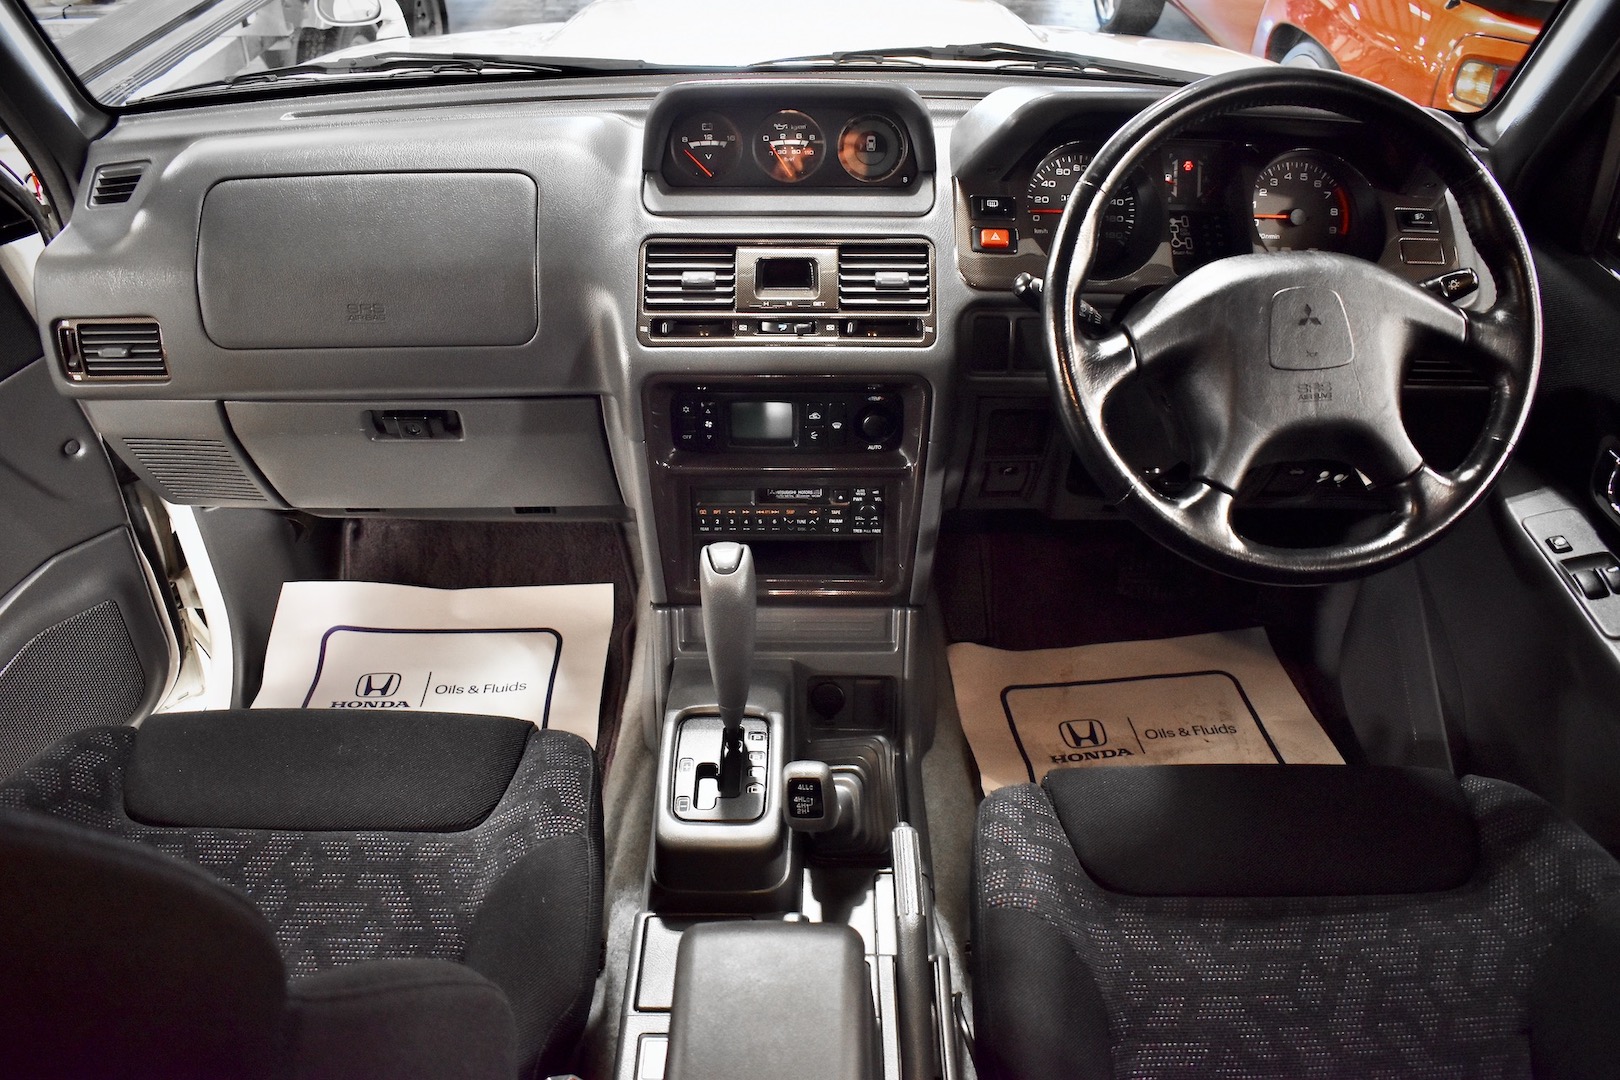 1997 Mitsubishi Pajero Evolution dashboard